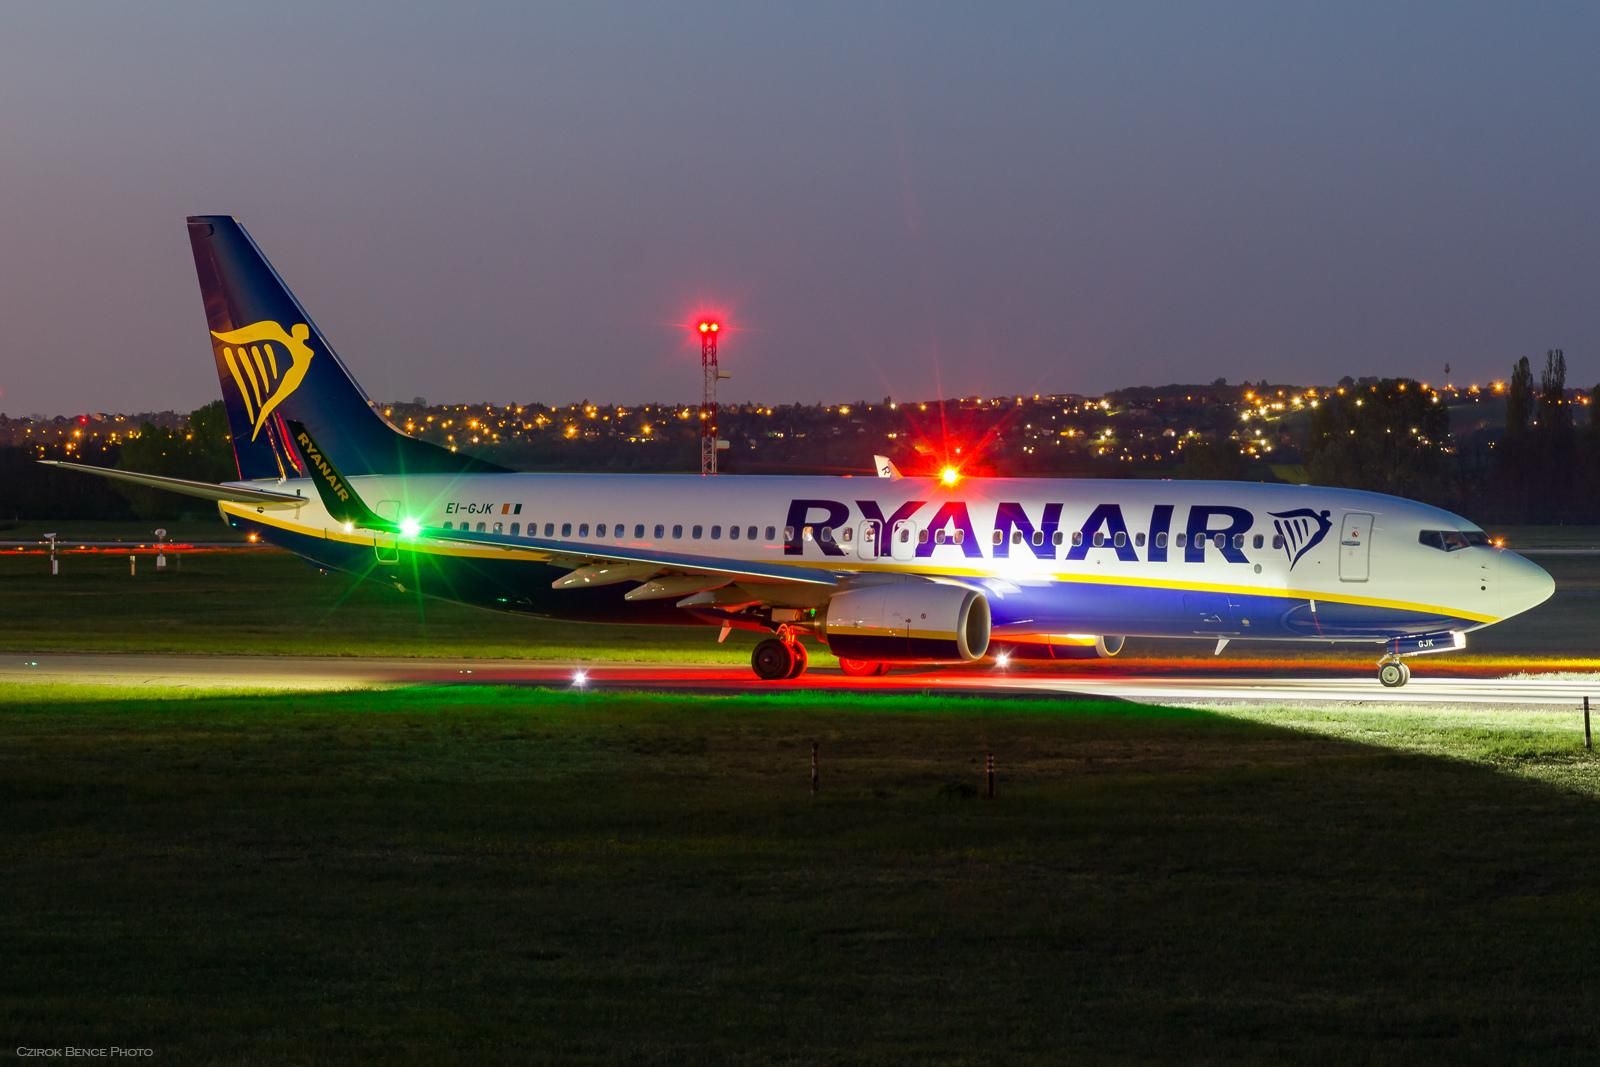 Дешевые перелеты в Европу зимой: неделя безумных скидок и "черная пятница" от Ryanair